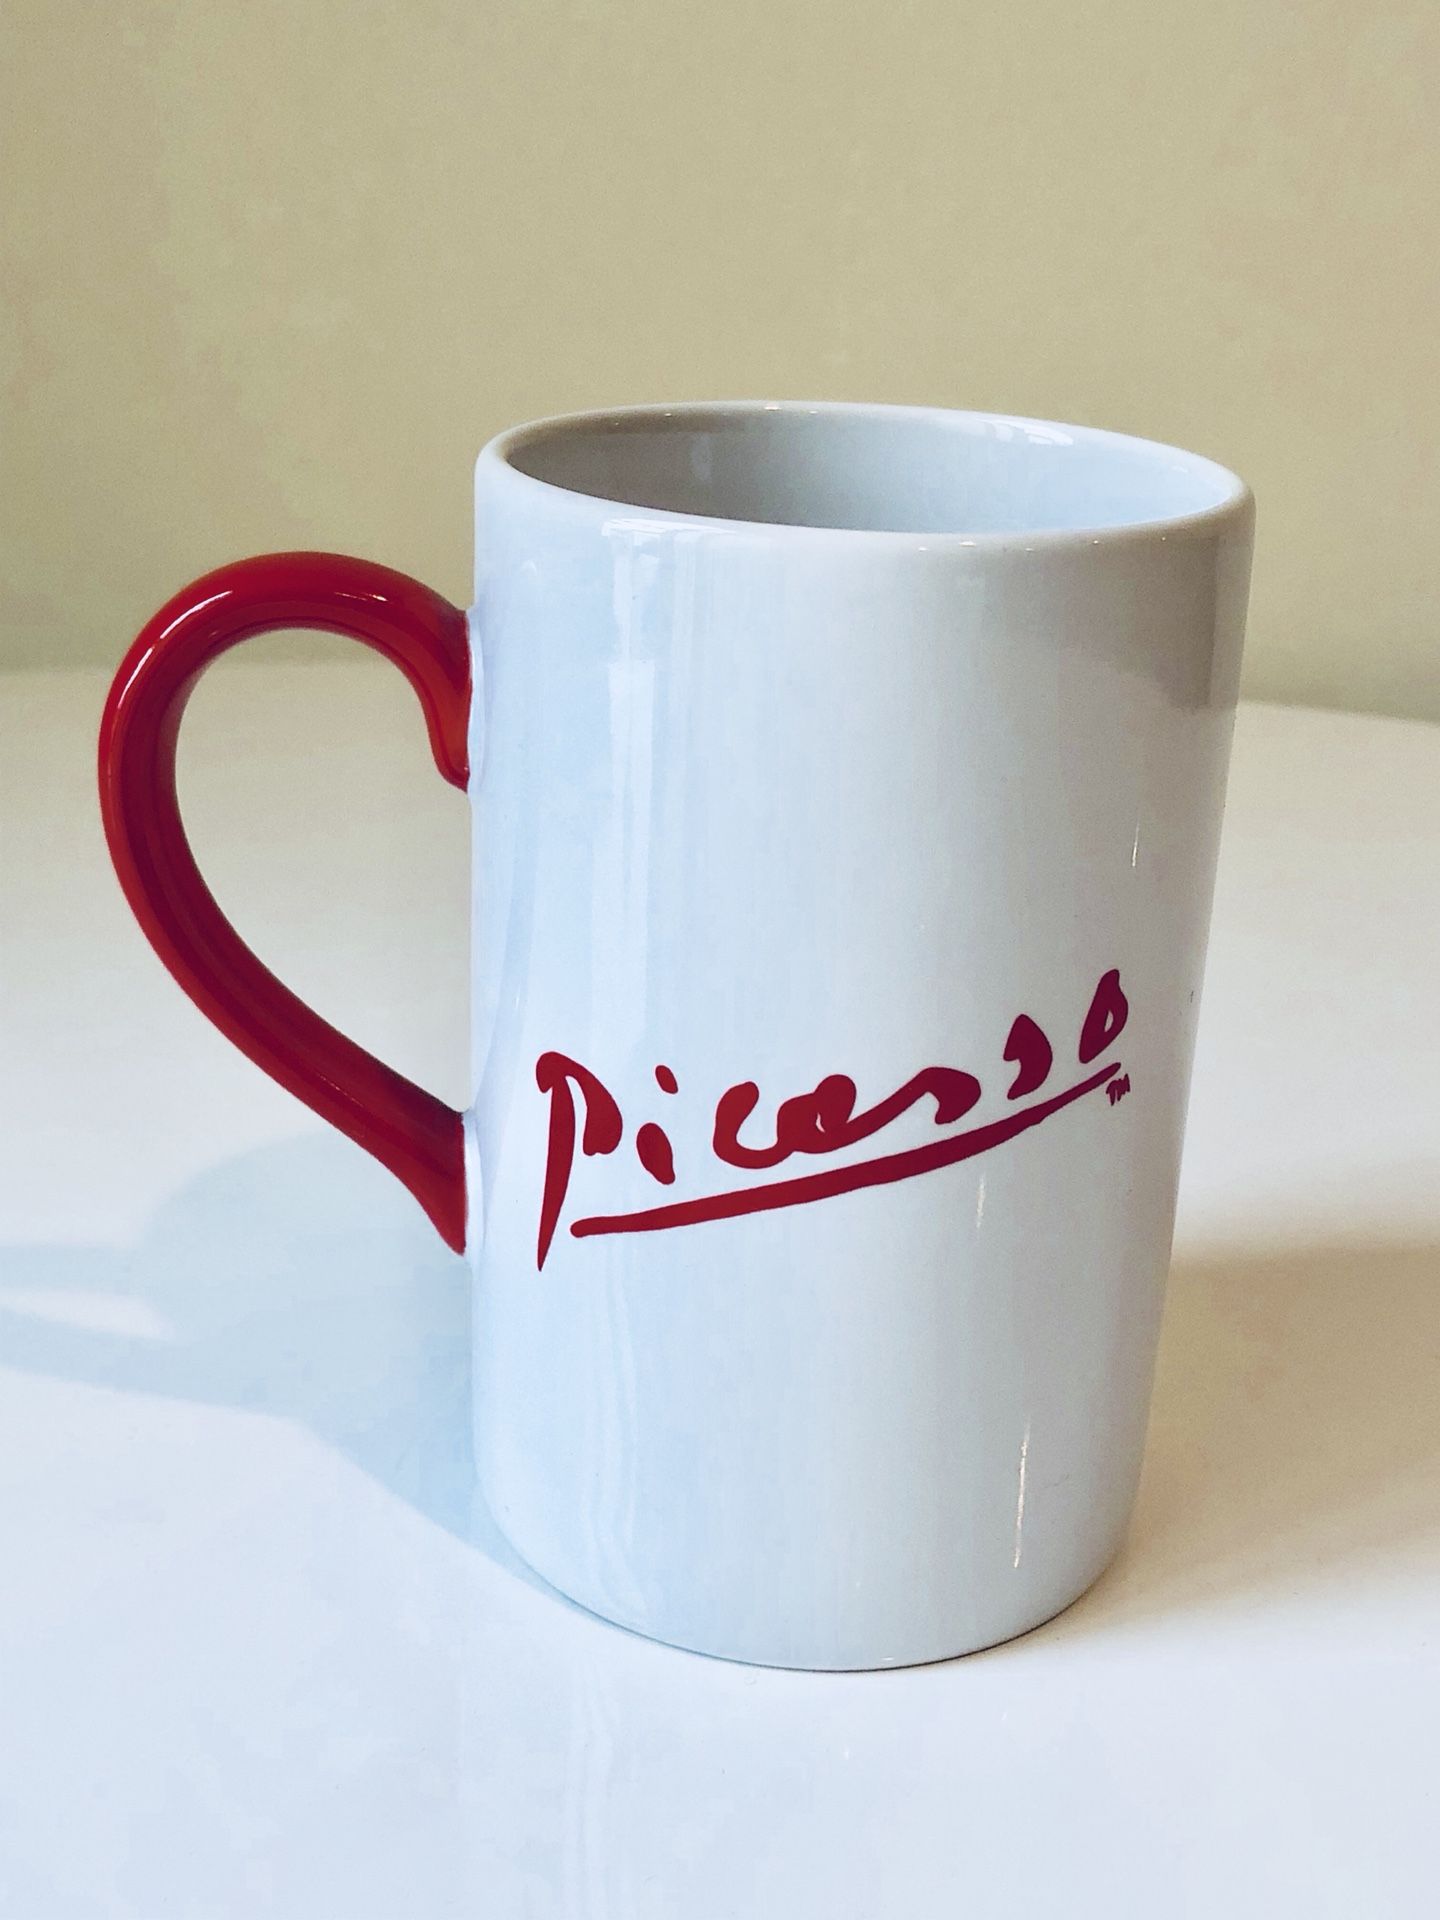 Picasso Mug